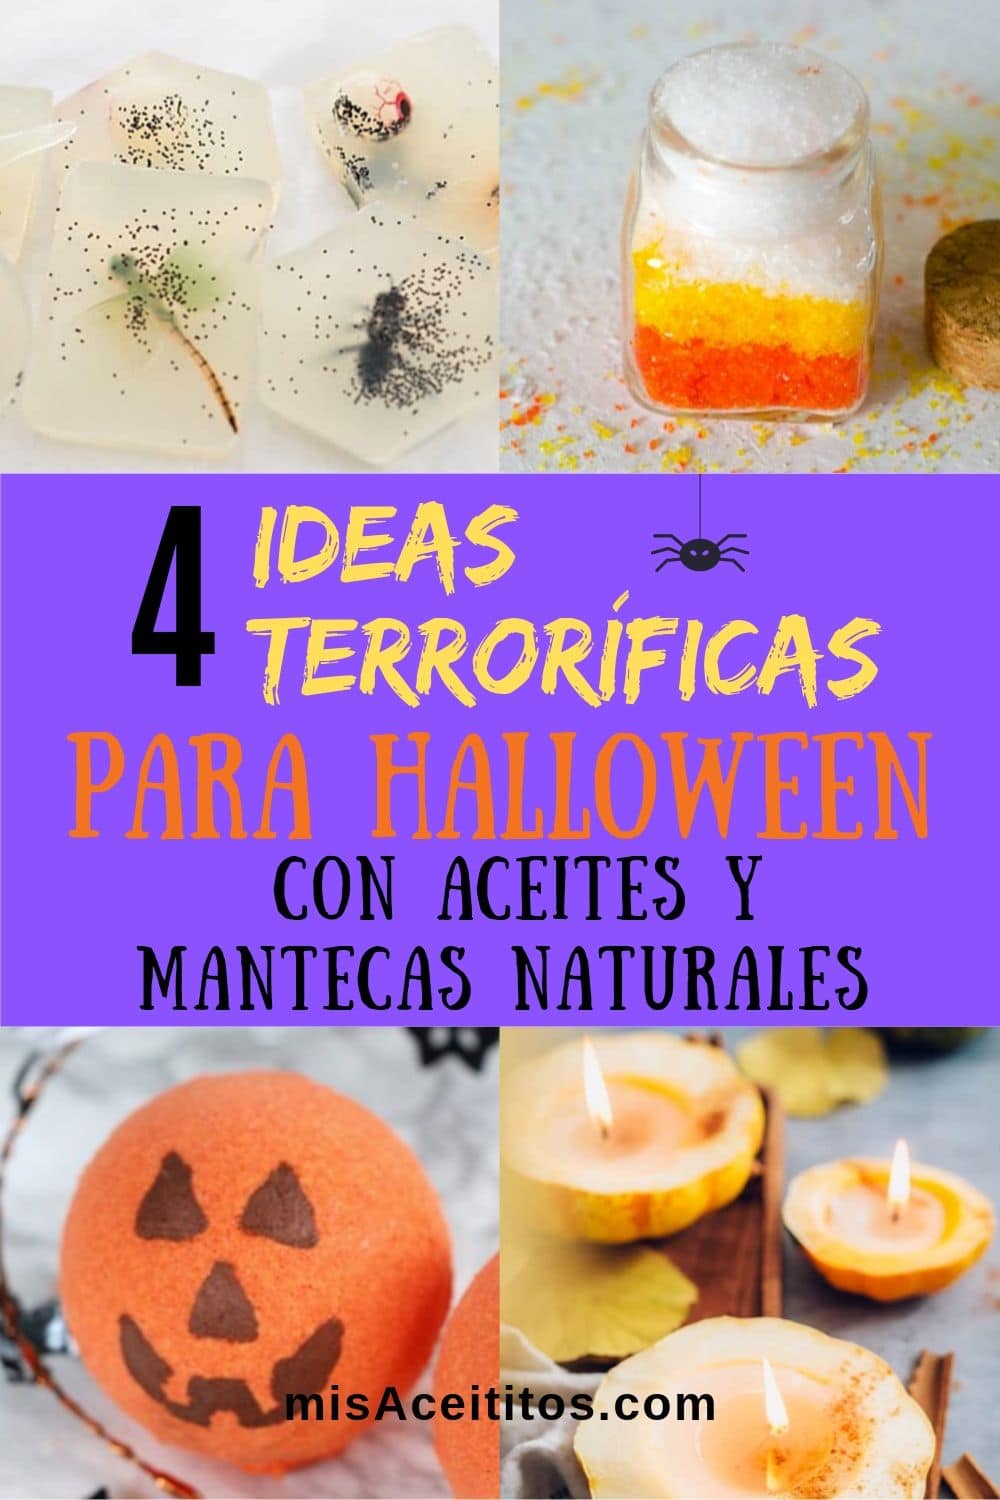 Aquí tienes 4 ideas terroríficas para Halloween hechas en casa con aceites y mantecas naturales. Son muy originales y divertidas de hacer. ¡No te las pierdas!